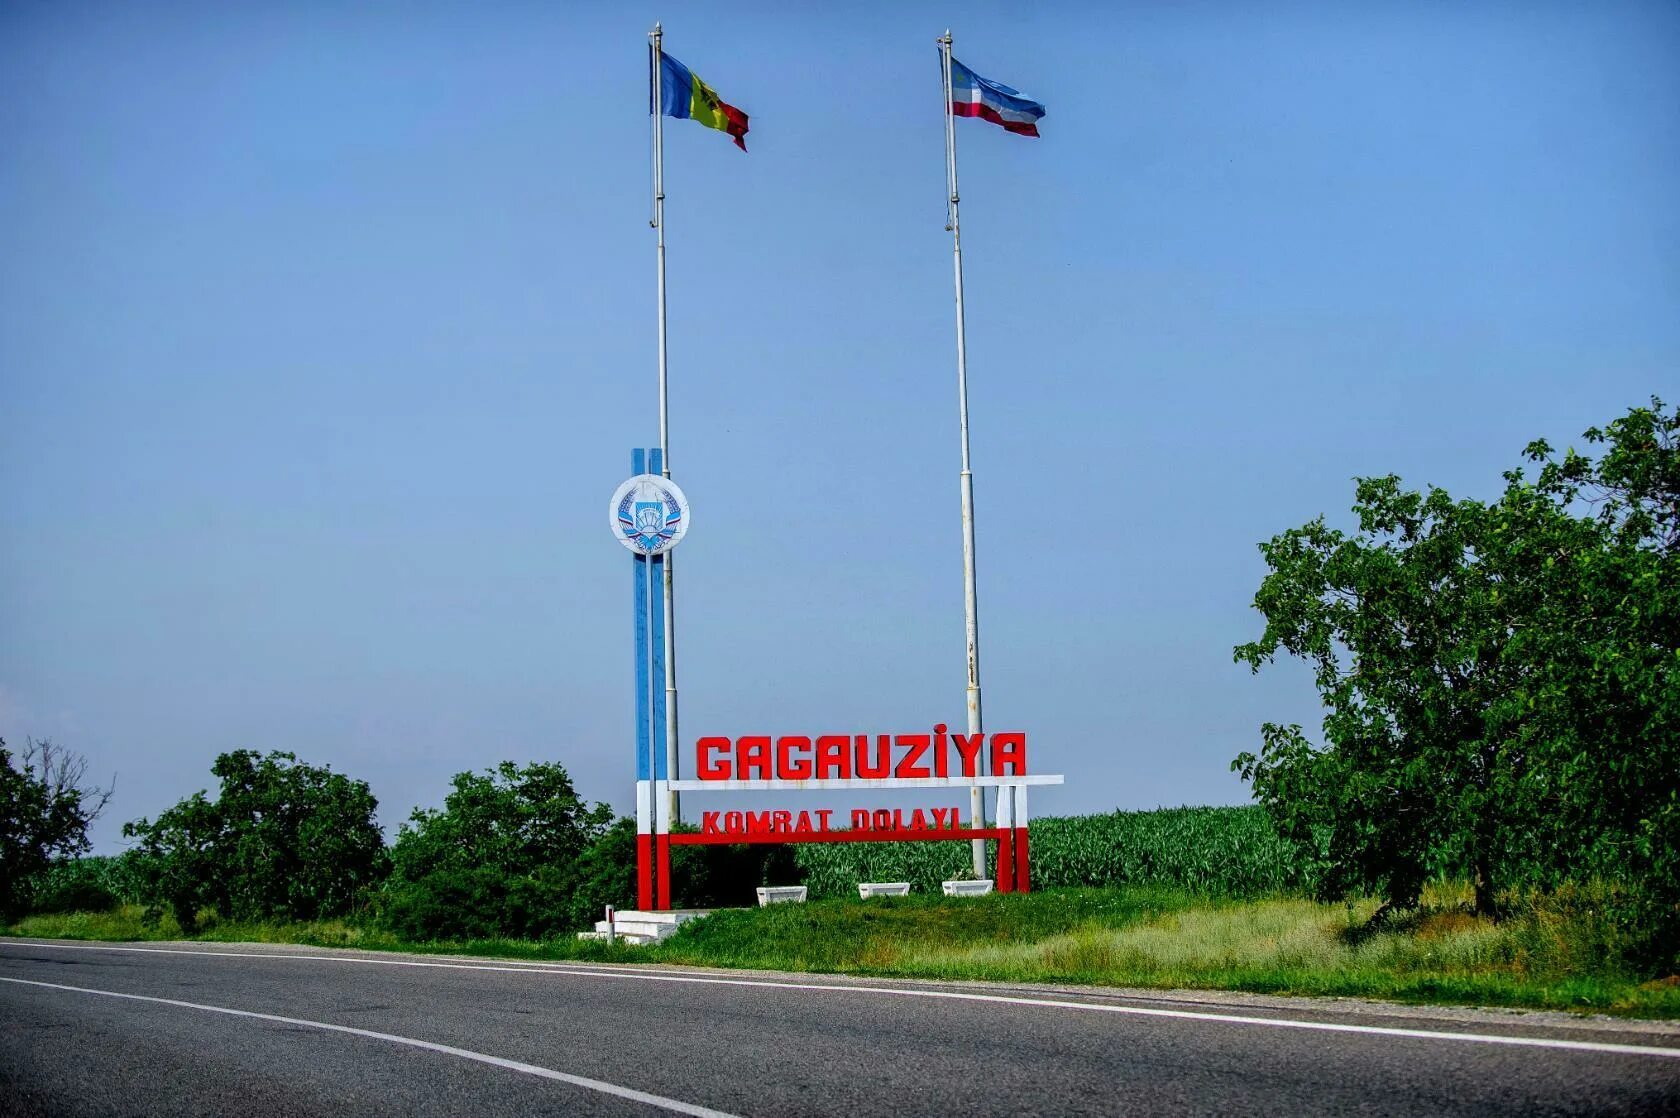 Автономия гагаузия. Юг Молдавии Гагаузия. Молдова, автономное территориальное образование Гагаузия.